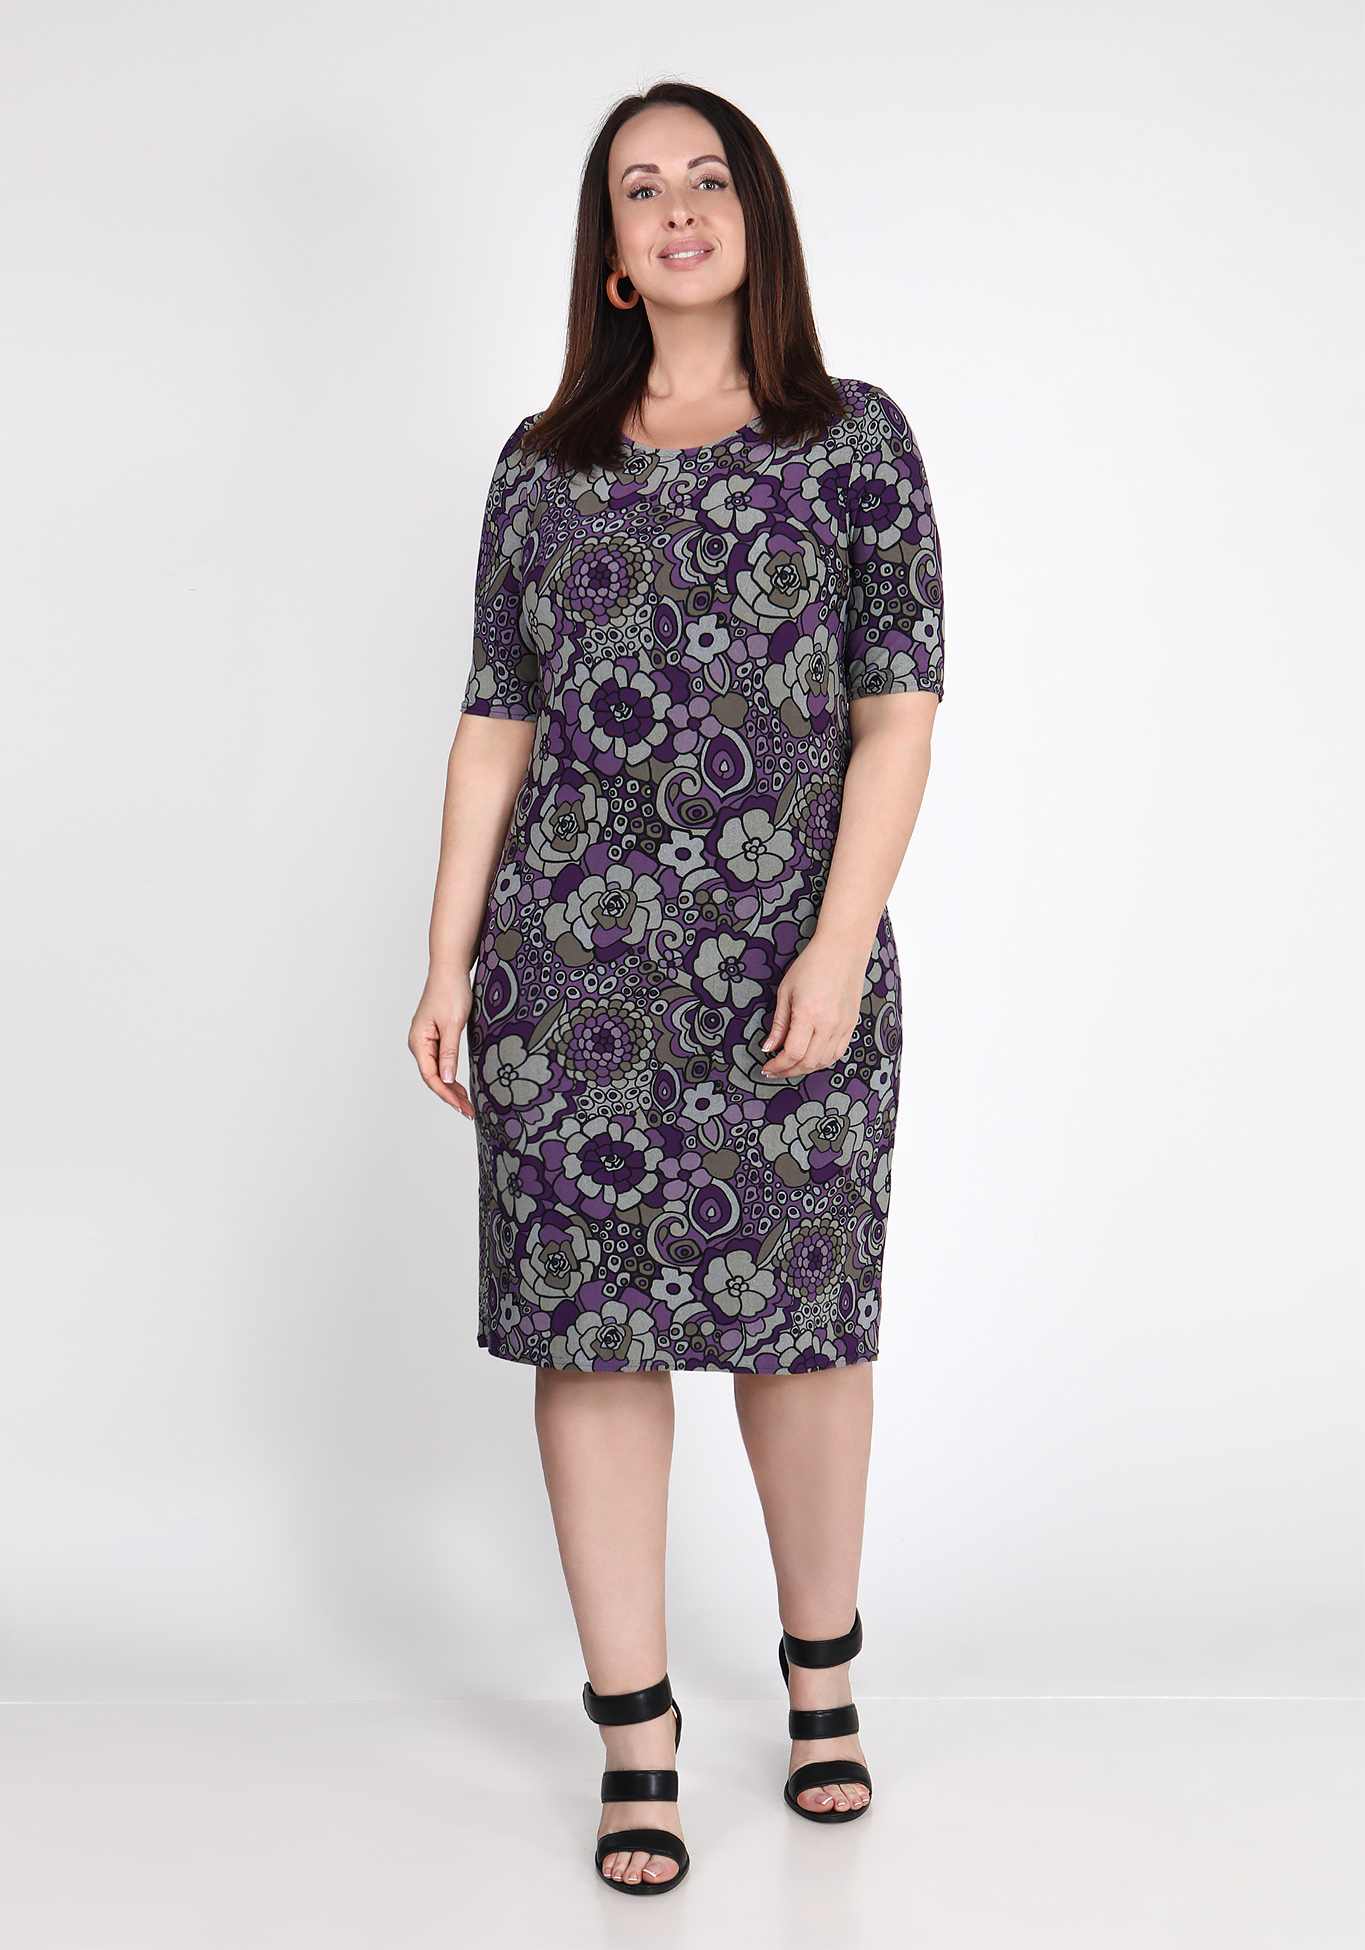 Платье "Сладкая иллюзия", размер 50, цвет фиолетовый - фото 1